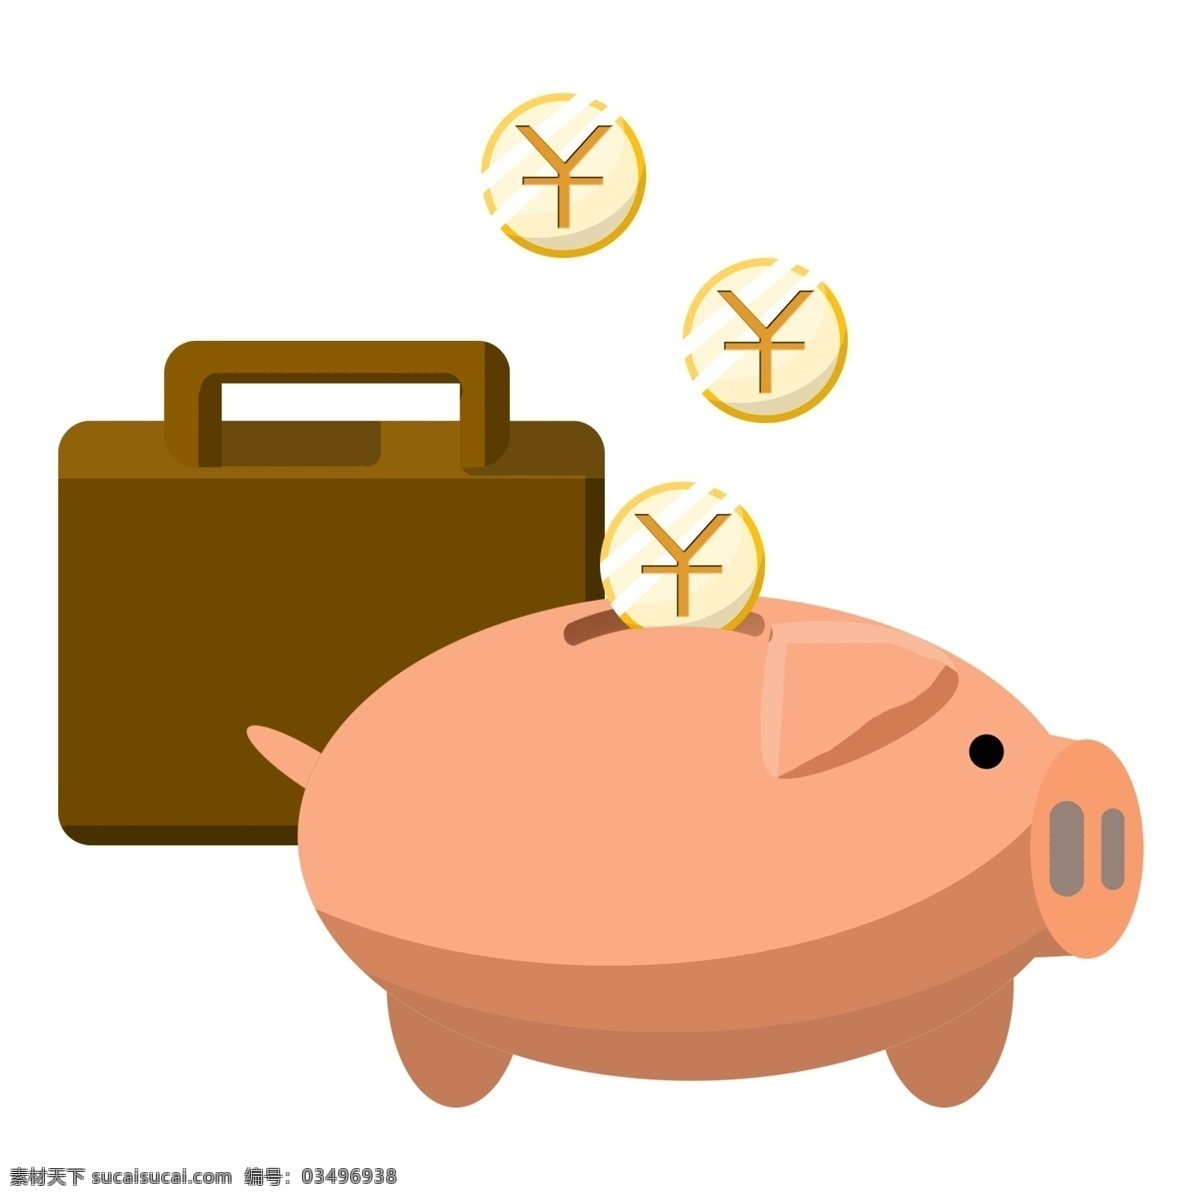 金融 黄色 小 猪 插画 存钱罐 漂亮 手绘 卡通